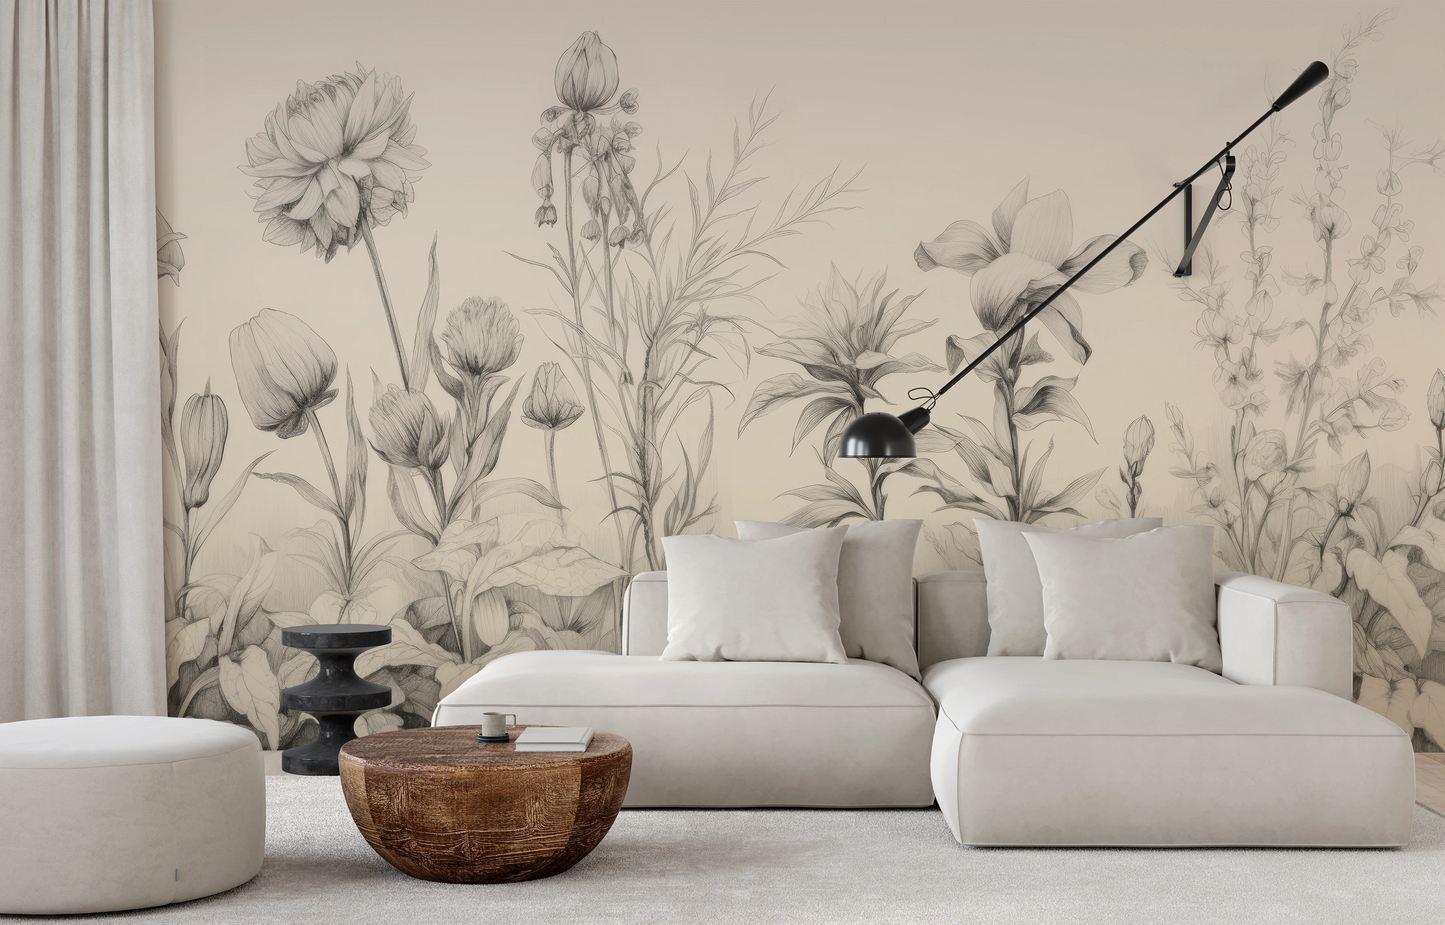 Wzór fototapety malowanej o nazwie Floral Tranquility pokazanej w aranżacji wnętrza.